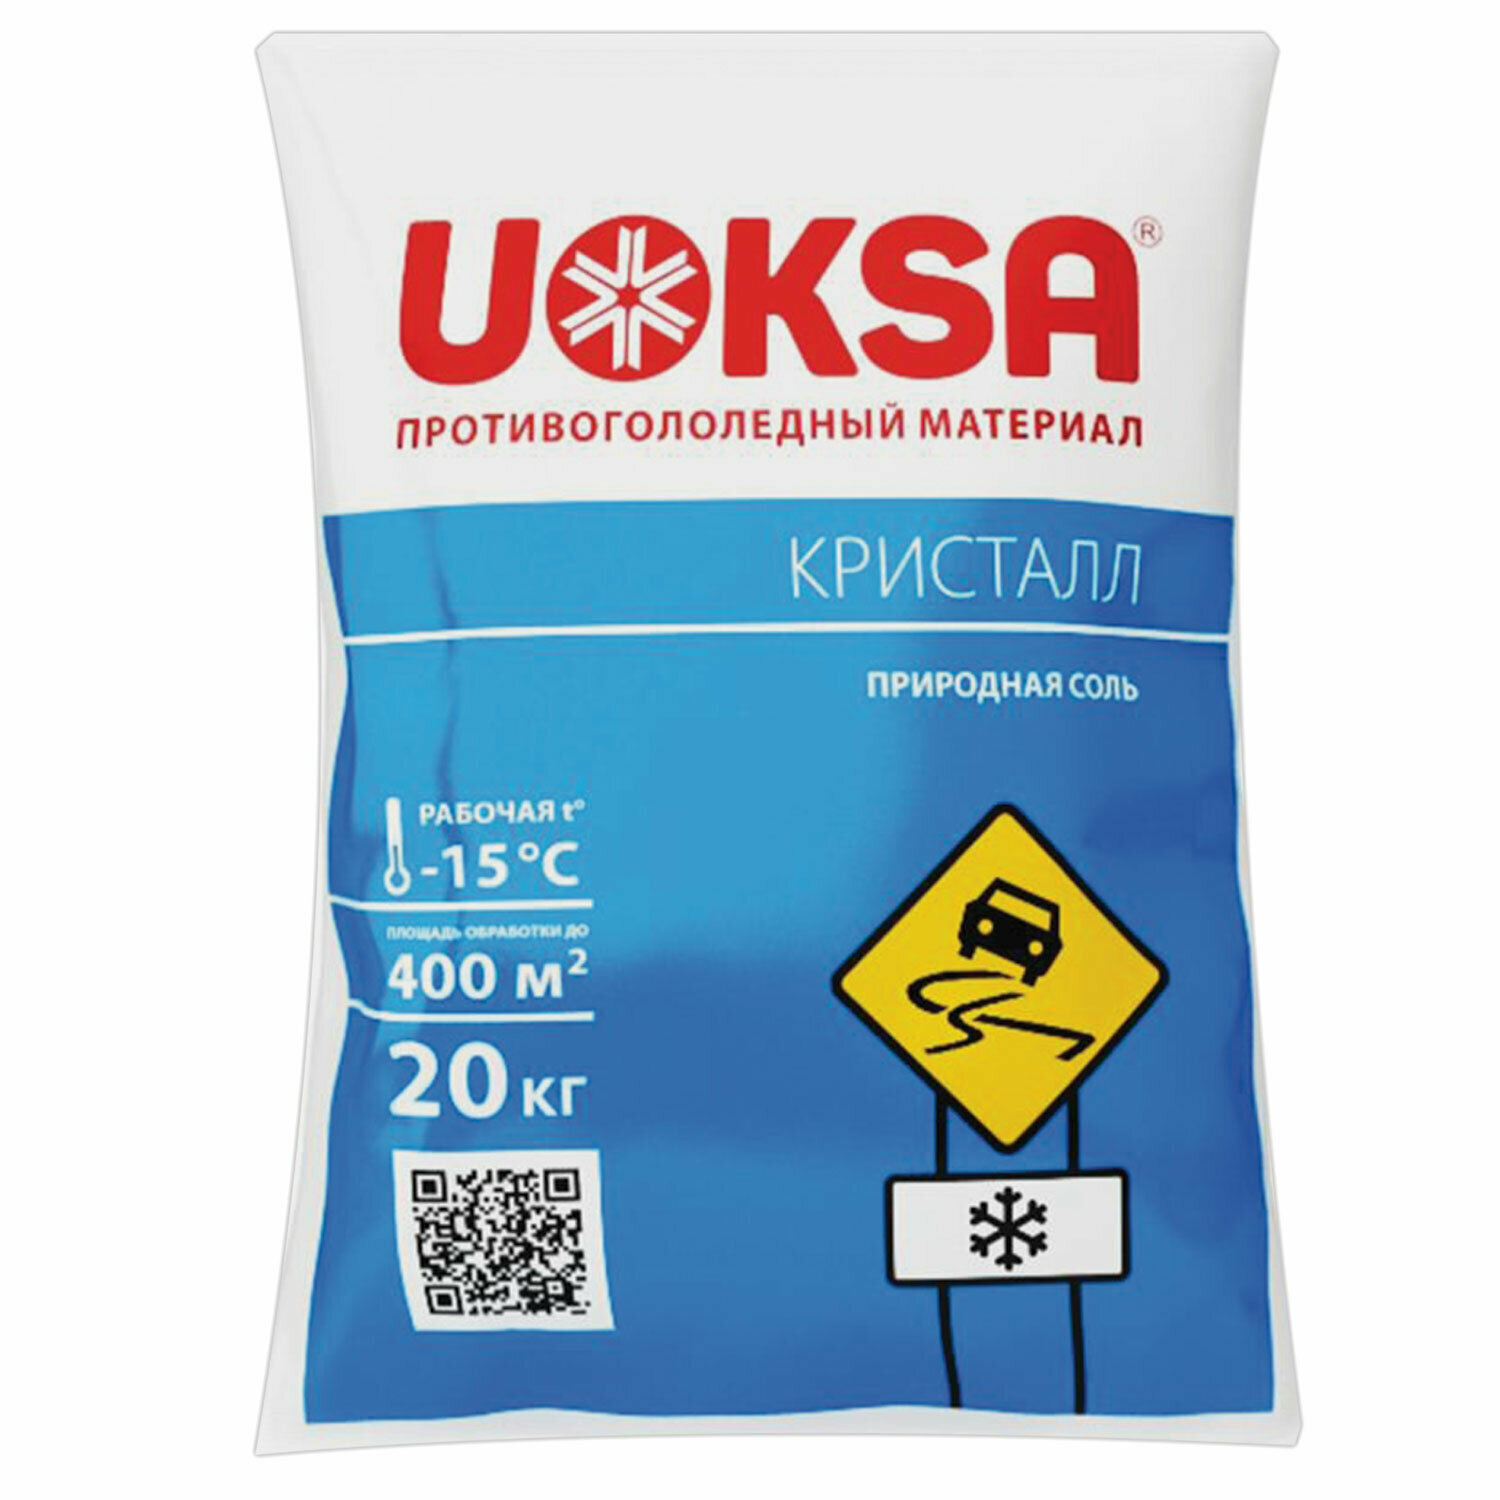 Материал противогололёдный 20 кг UOKSA КрИстал до -15°C природная соль мешок В комплекте: 1шт.